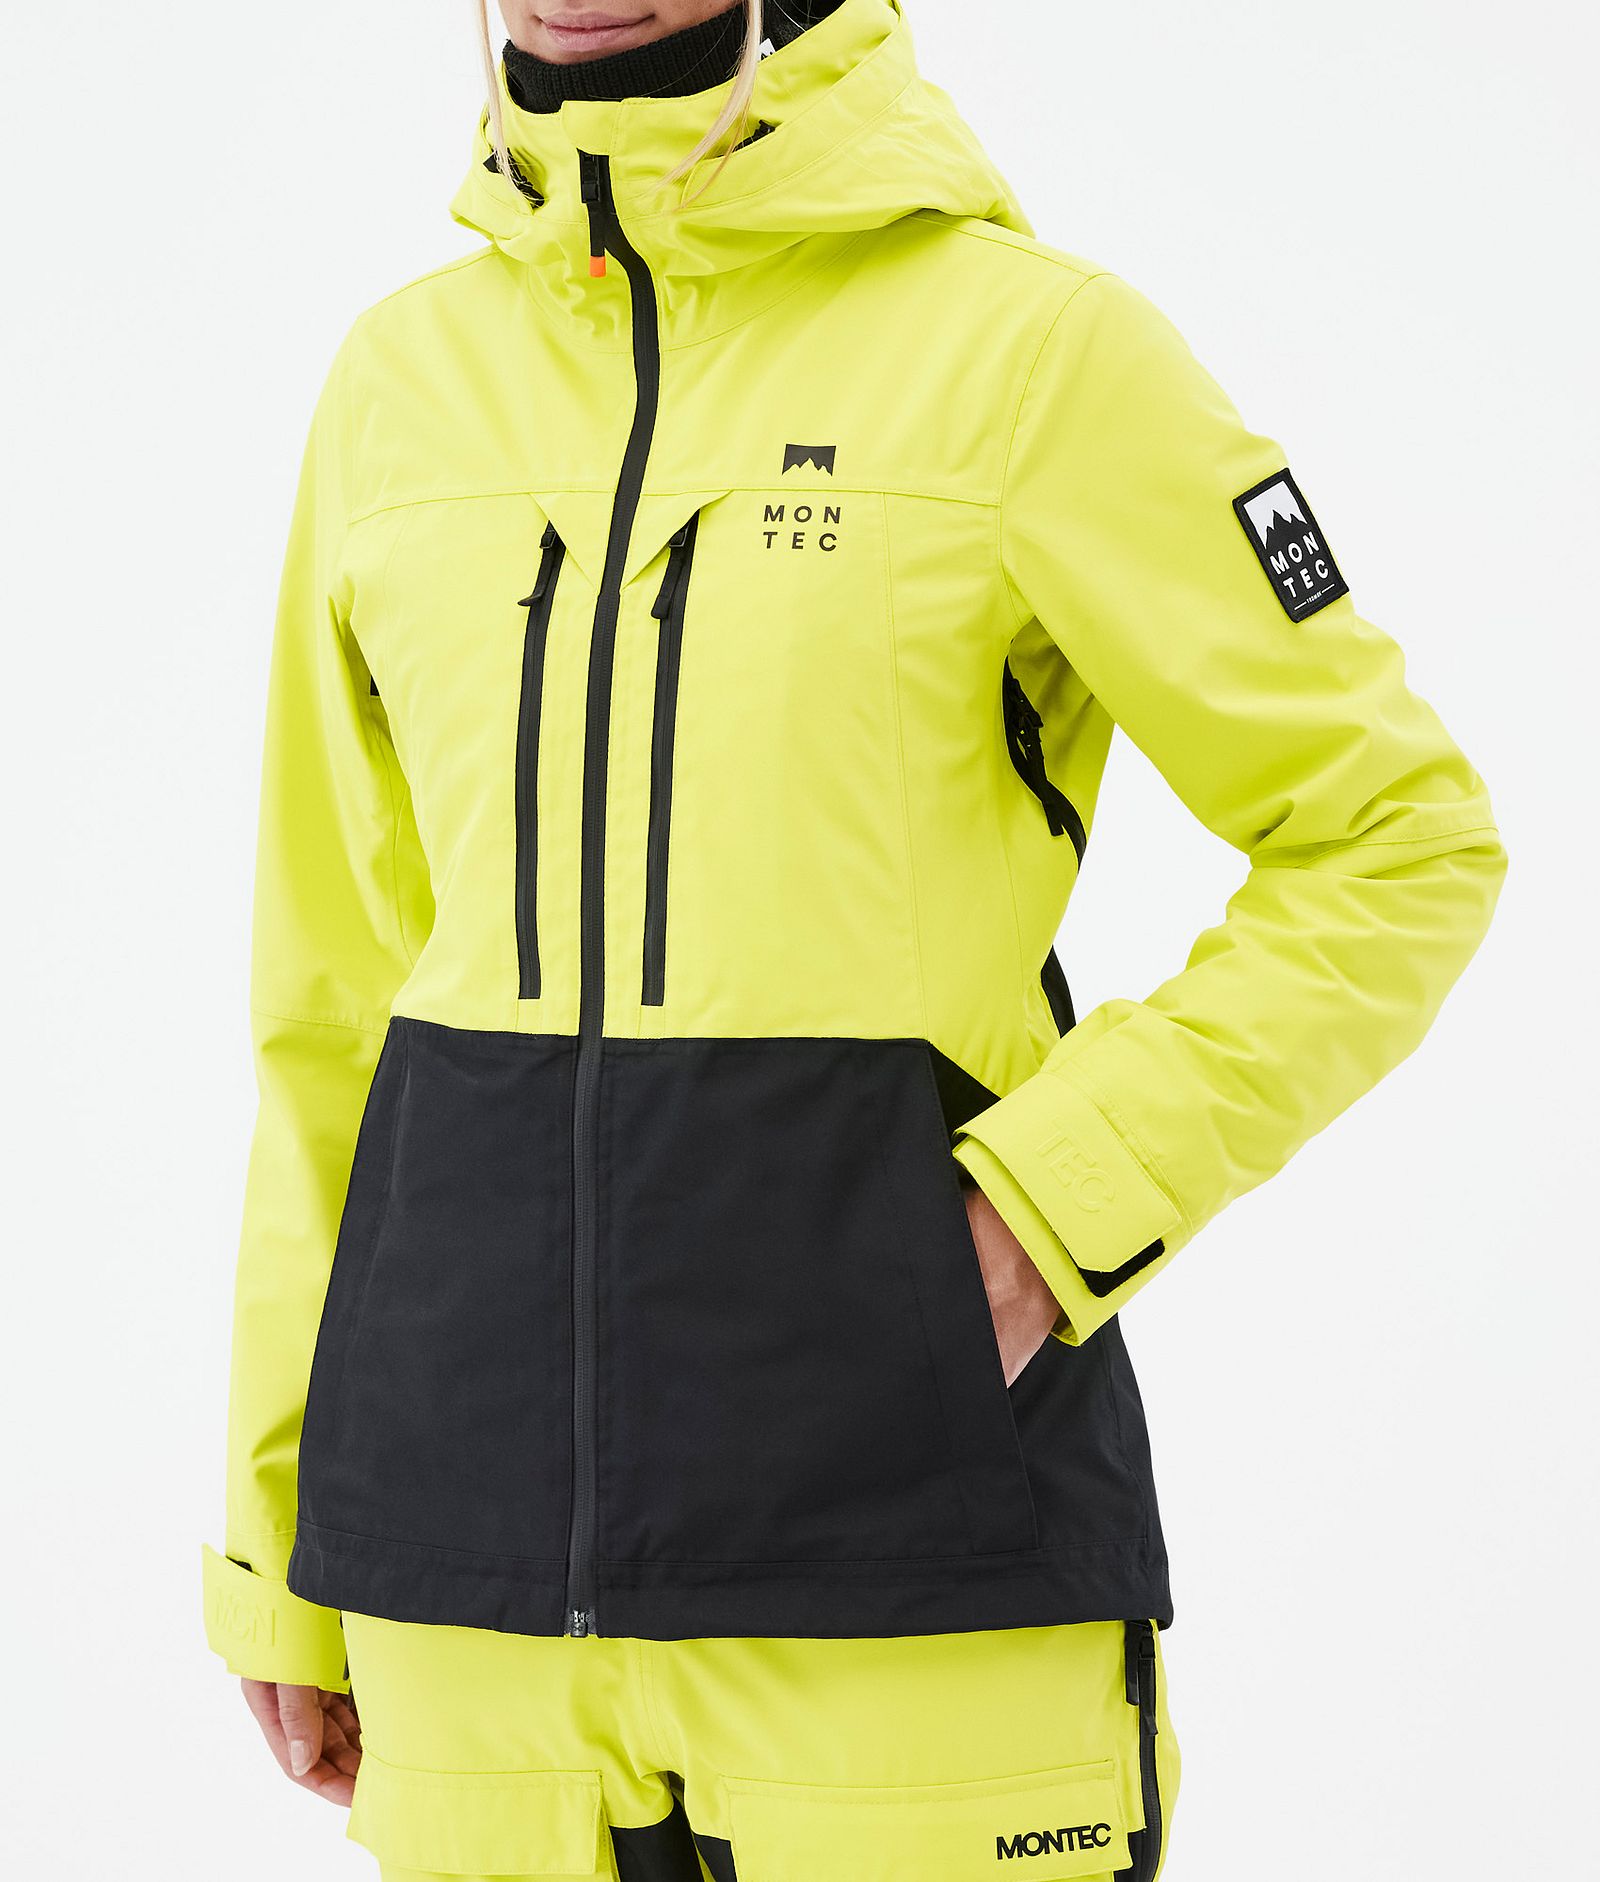 Moss W Ski Jacket Women Bright Yellow/Black, Image 8 of 10